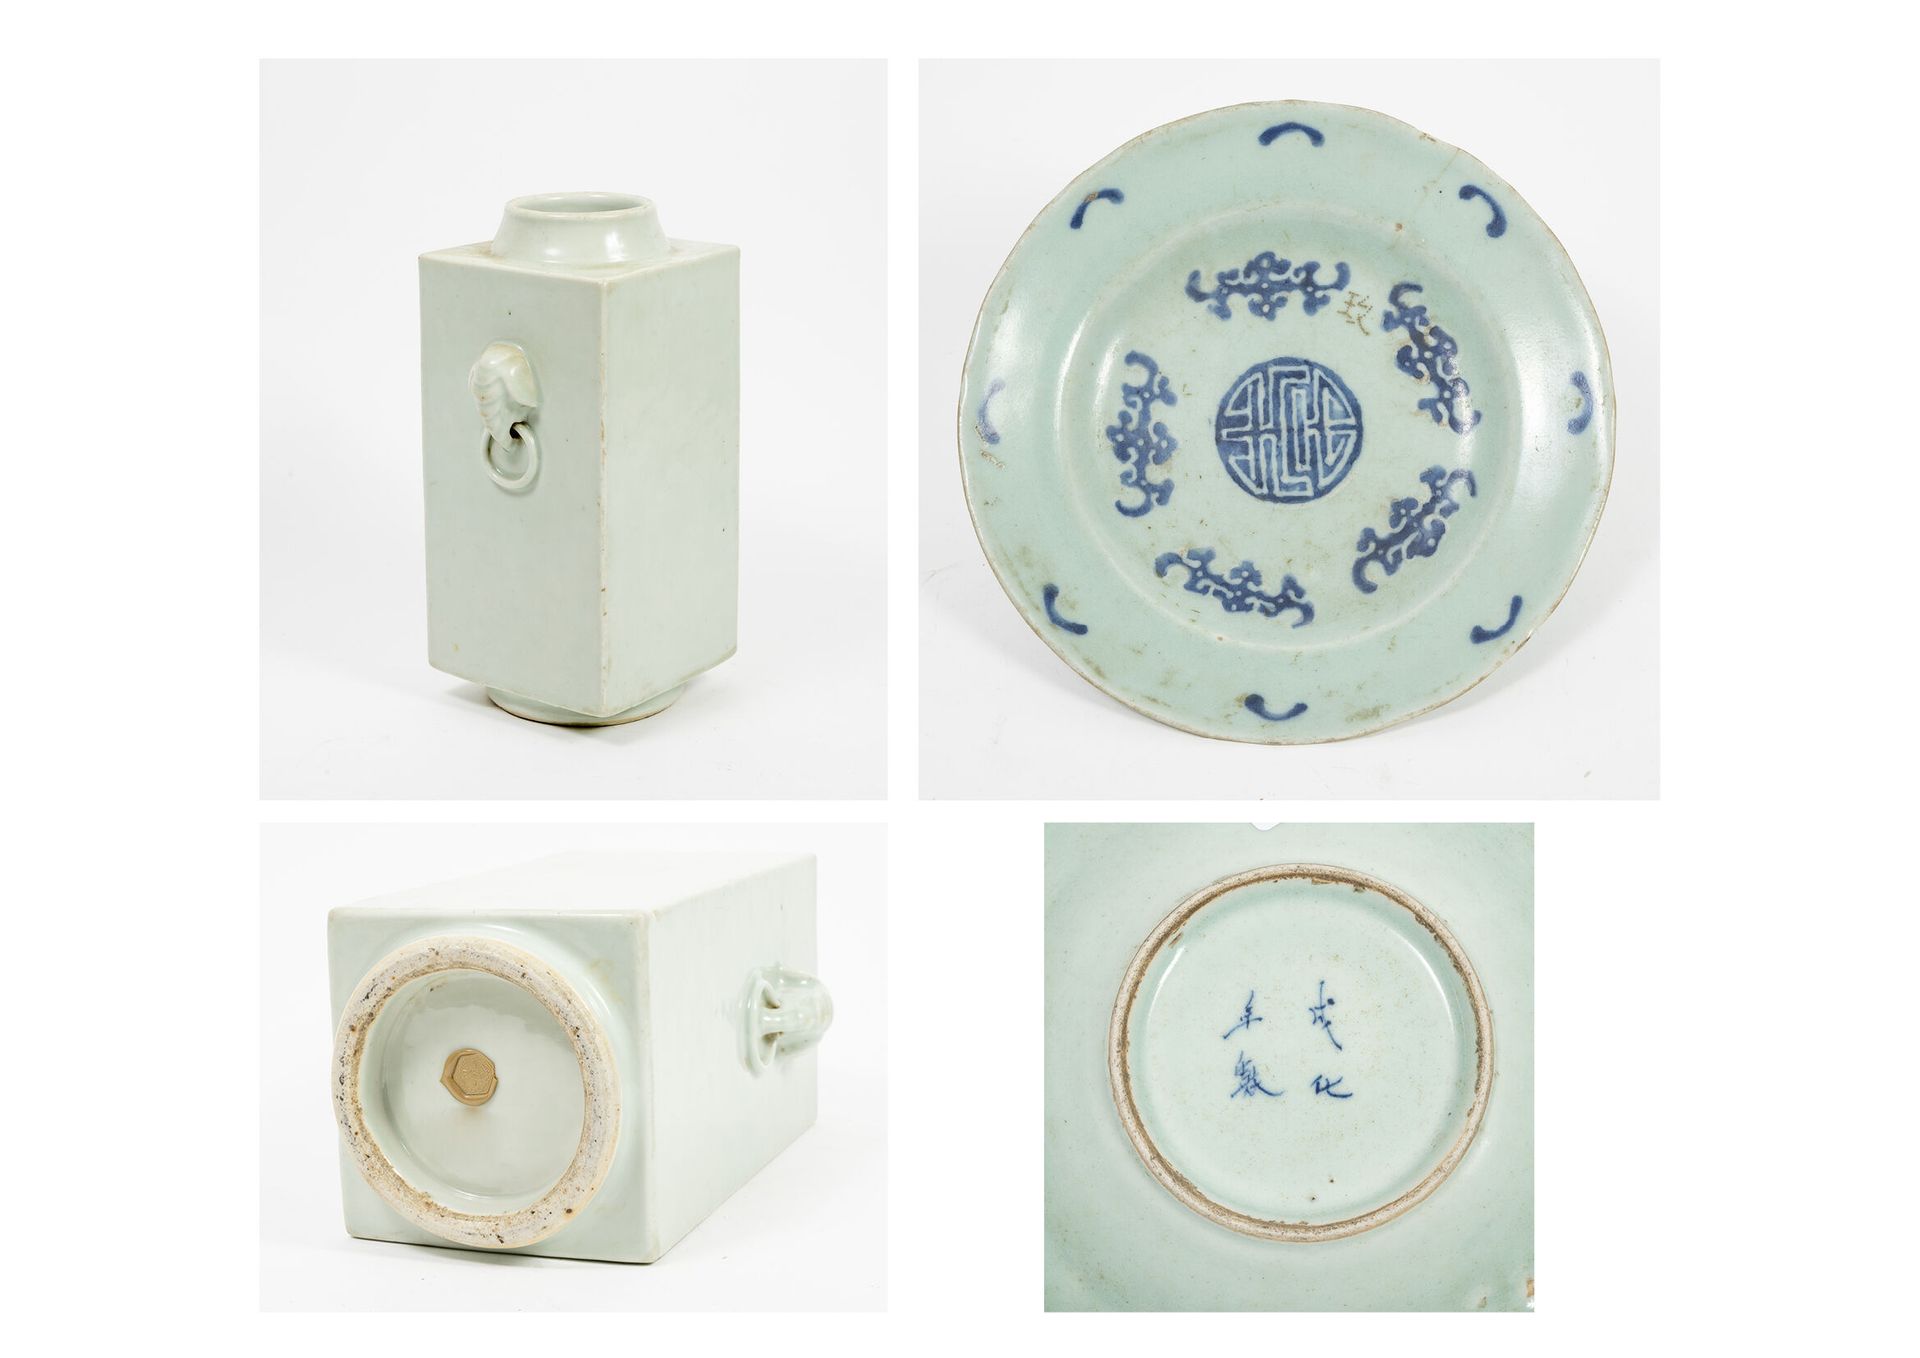 CHINE, XIXème-XXème siècles Two celadon enamel porcelain pieces:

- Hollow circu&hellip;